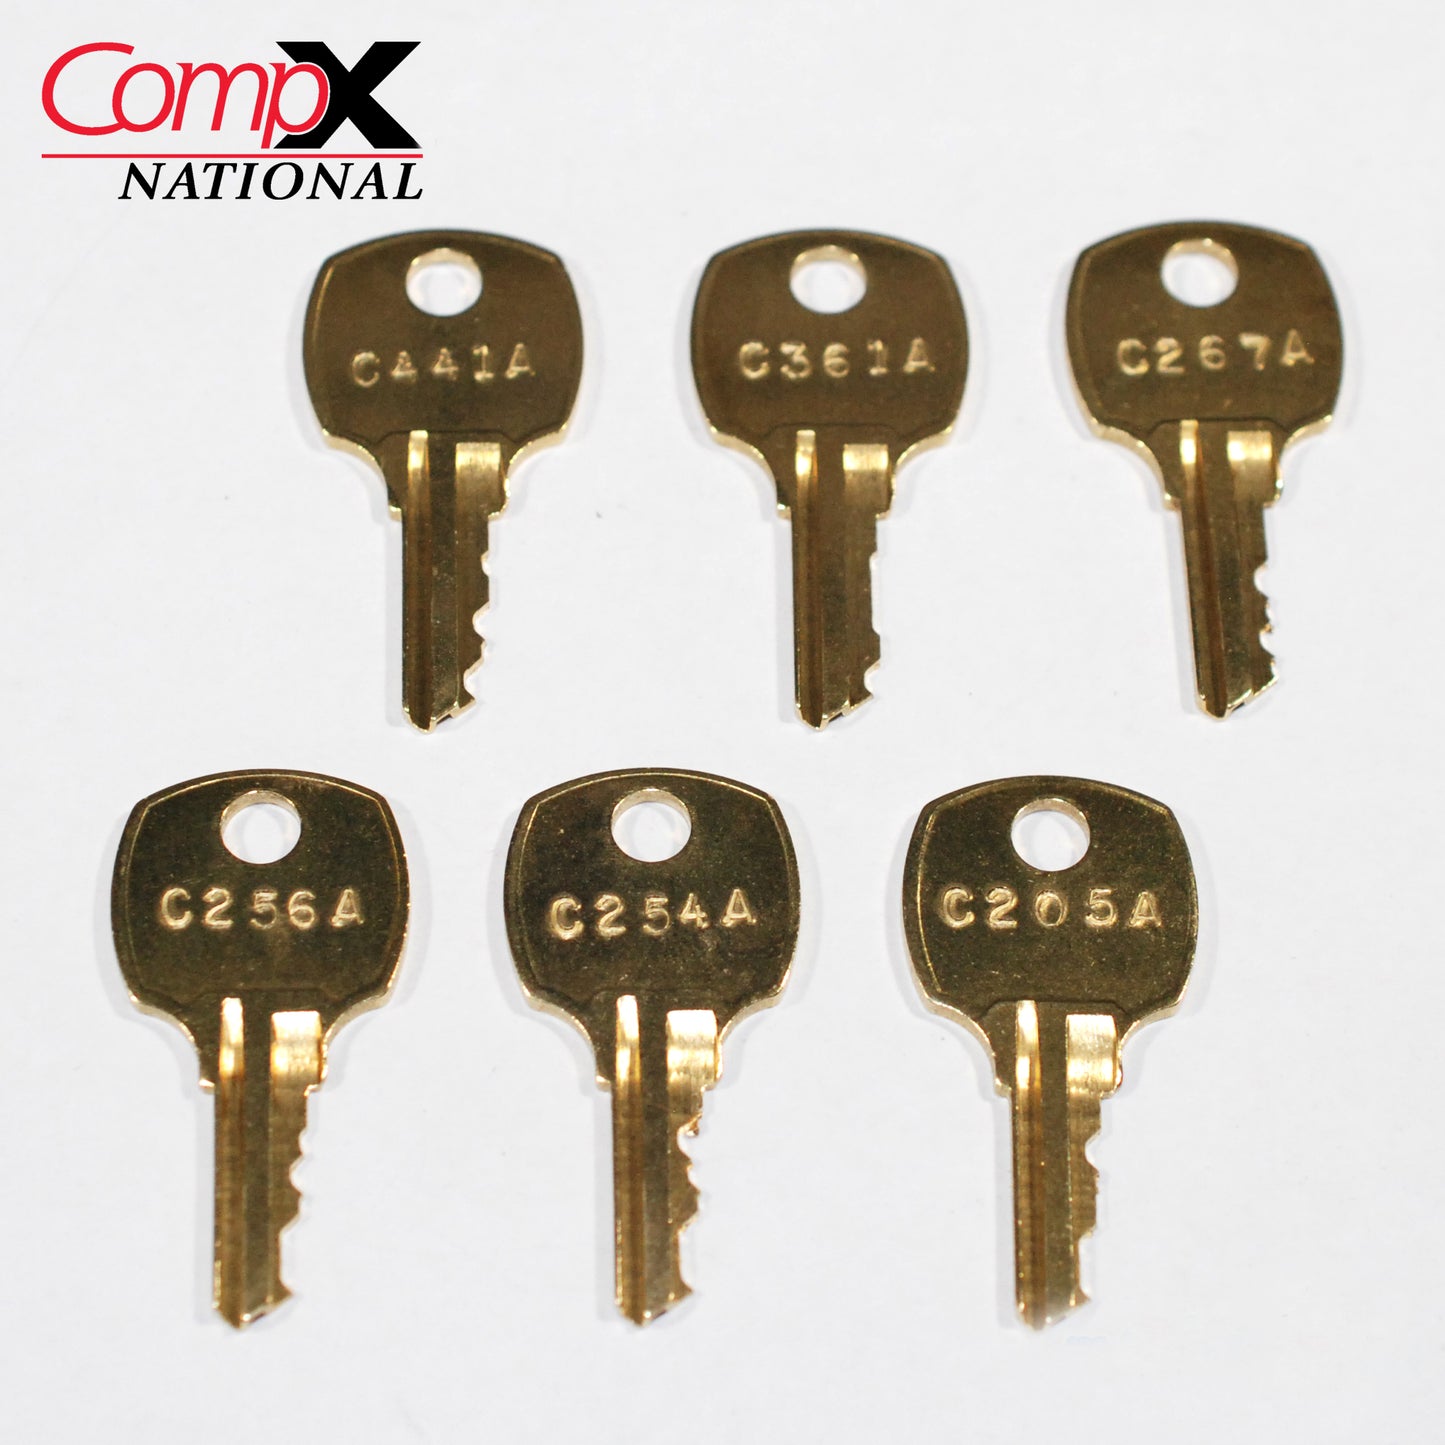 6 CompX Pentesting Key Set ~ C205A, C254A, C256A, C267A, C361A, C441A